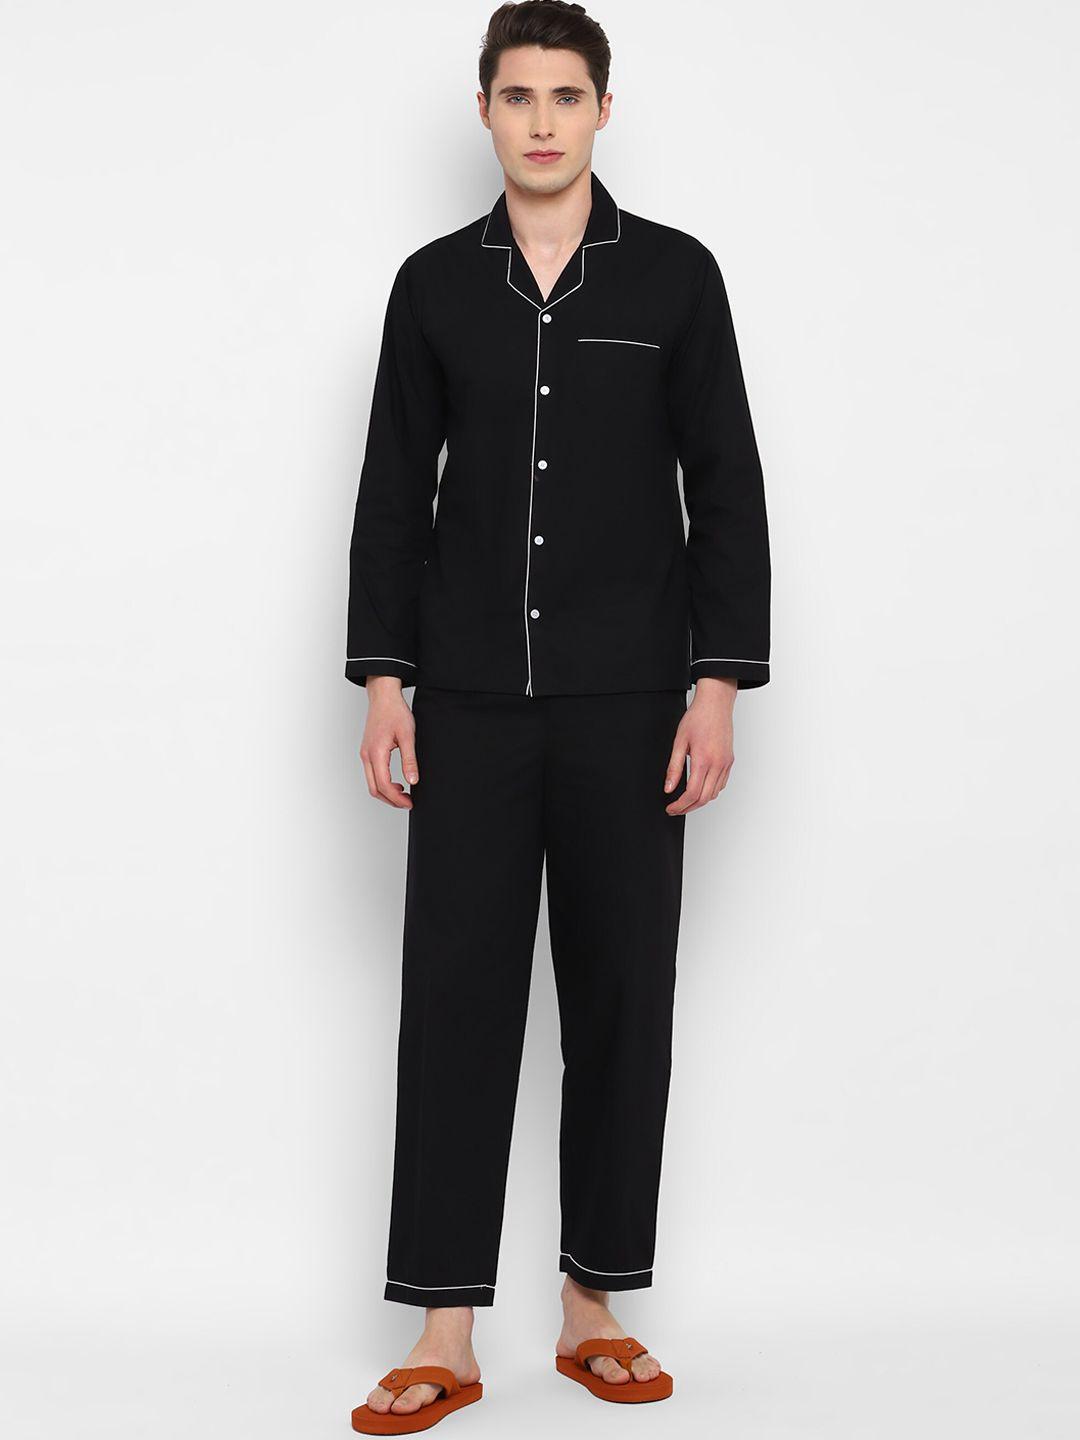 shopbloom pure cotton night suit mc-01-ls